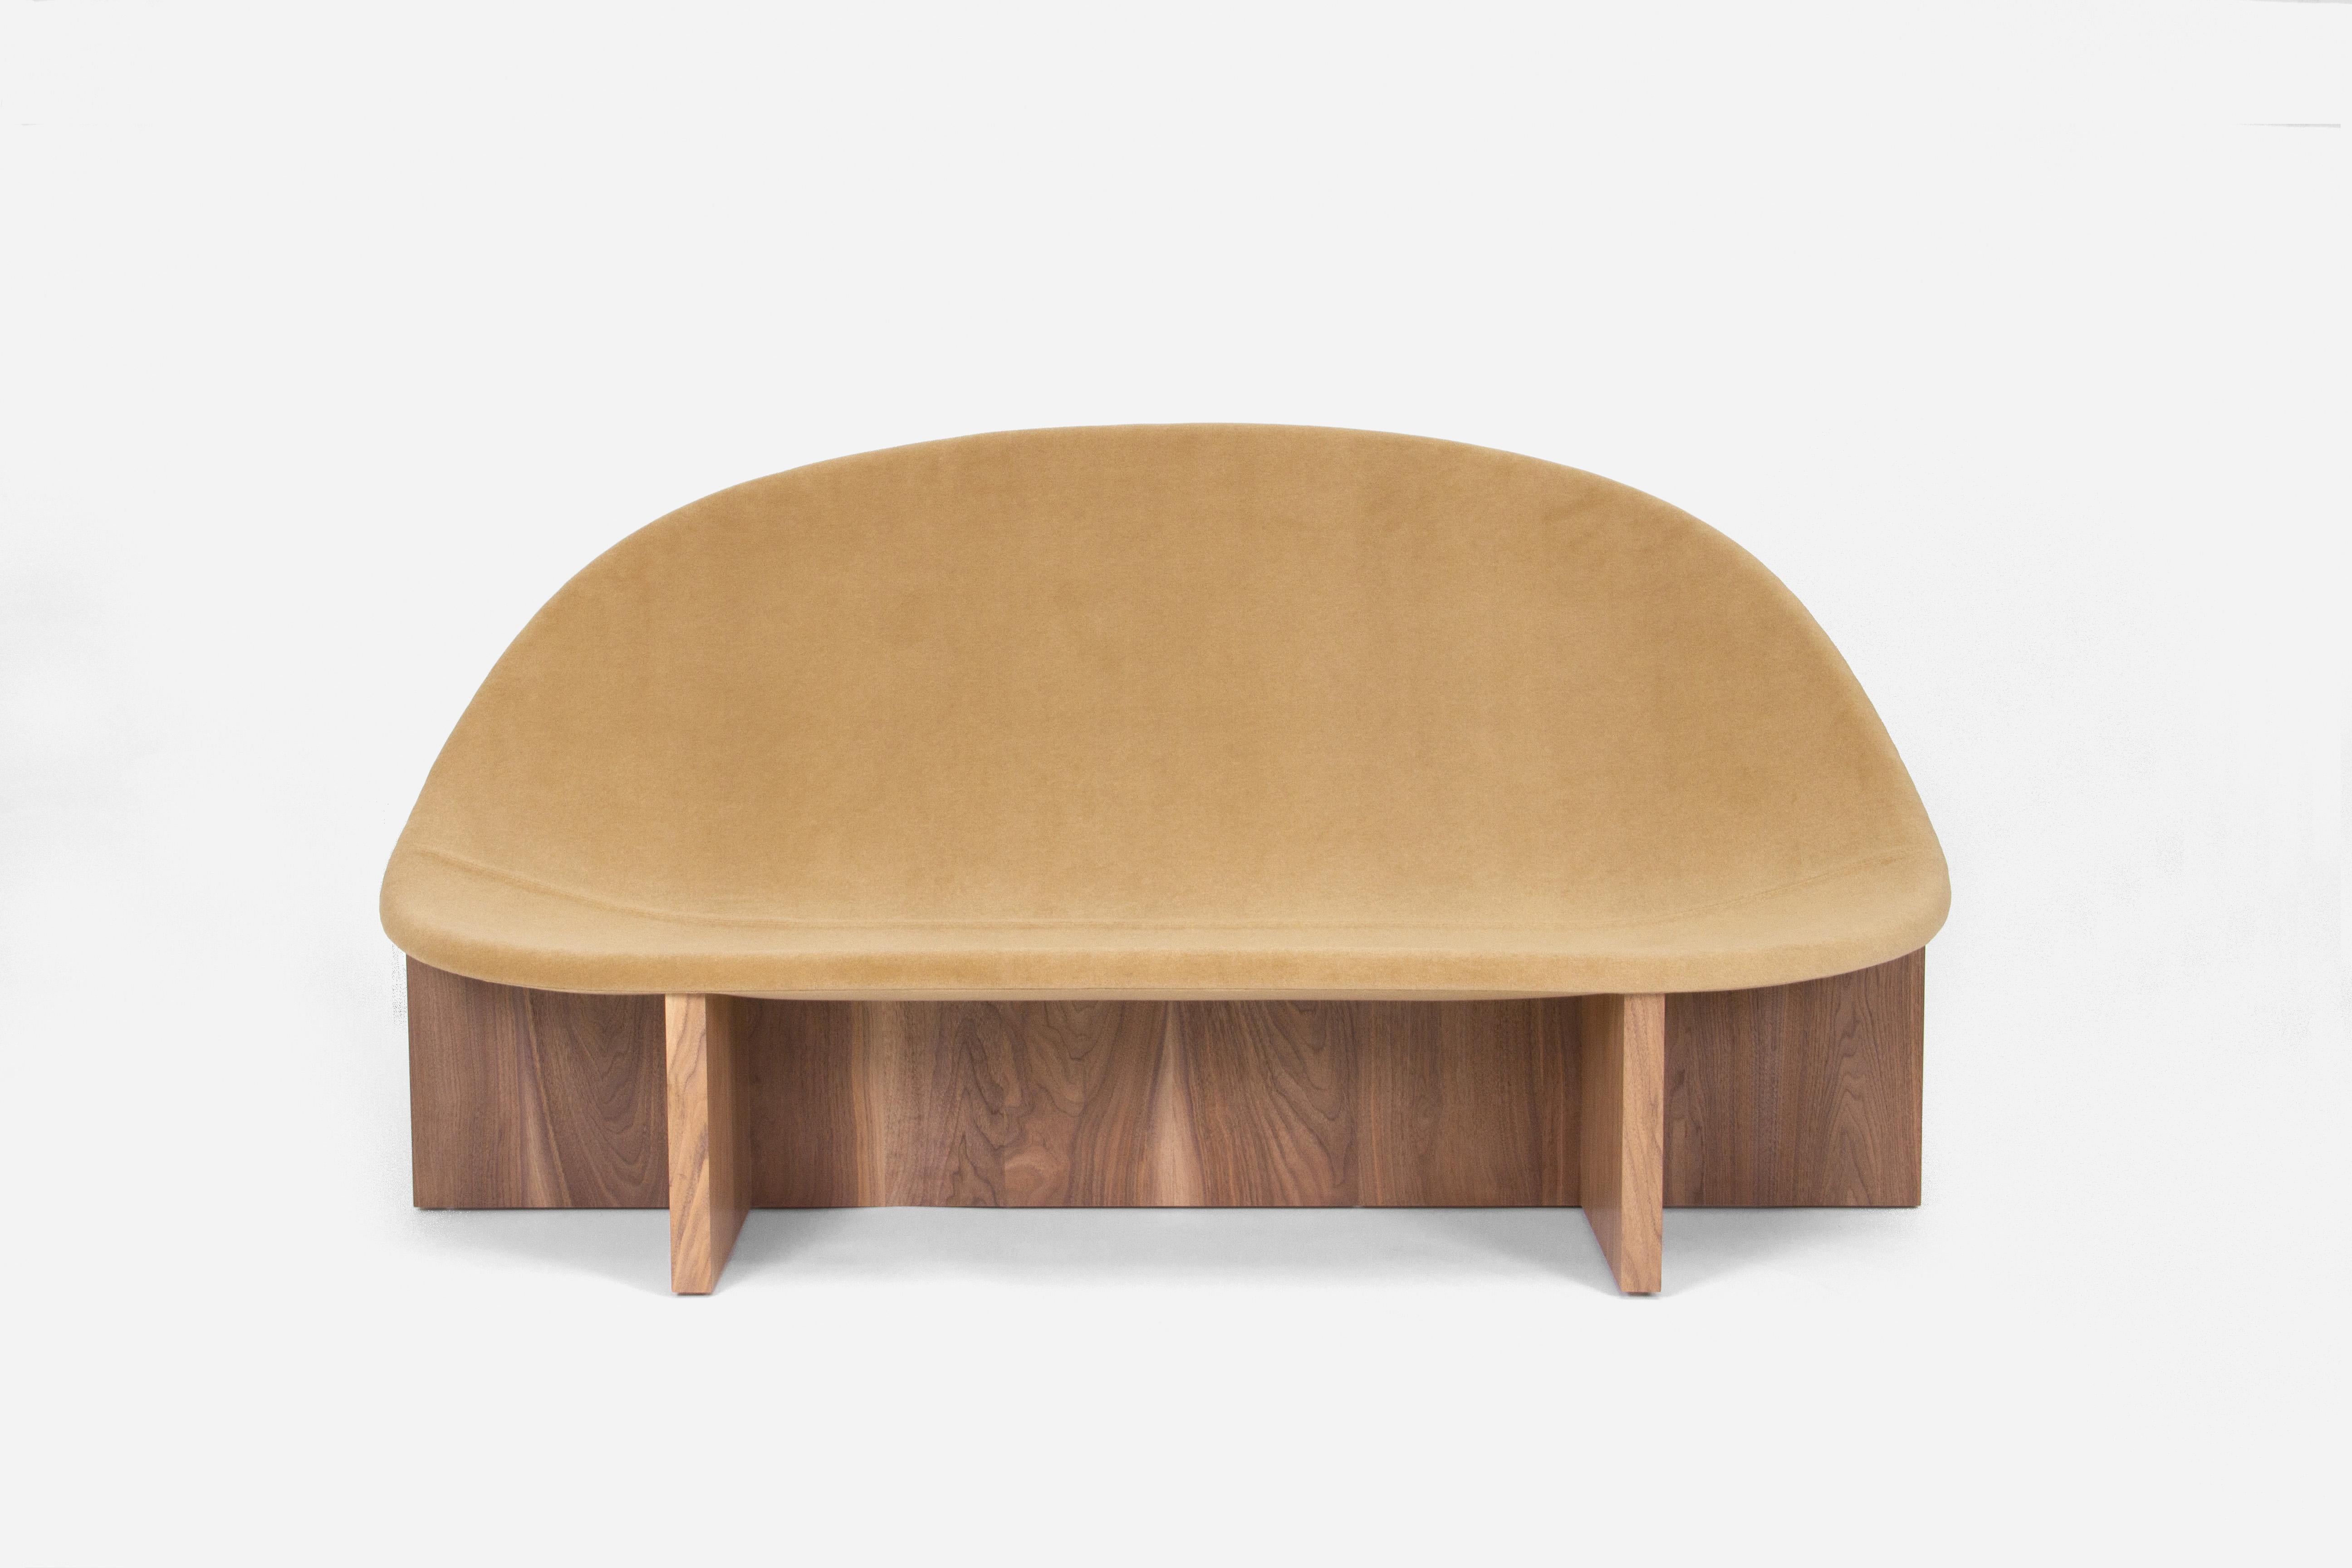 La version canapé de notre chaise longue NIDO, un best-seller. La forme ovoïde de l'assise en bois rembourrée qui s'emboîte dans le cadre en bois massif en forme de croix lui donne le nom de NIDO, qui signifie 